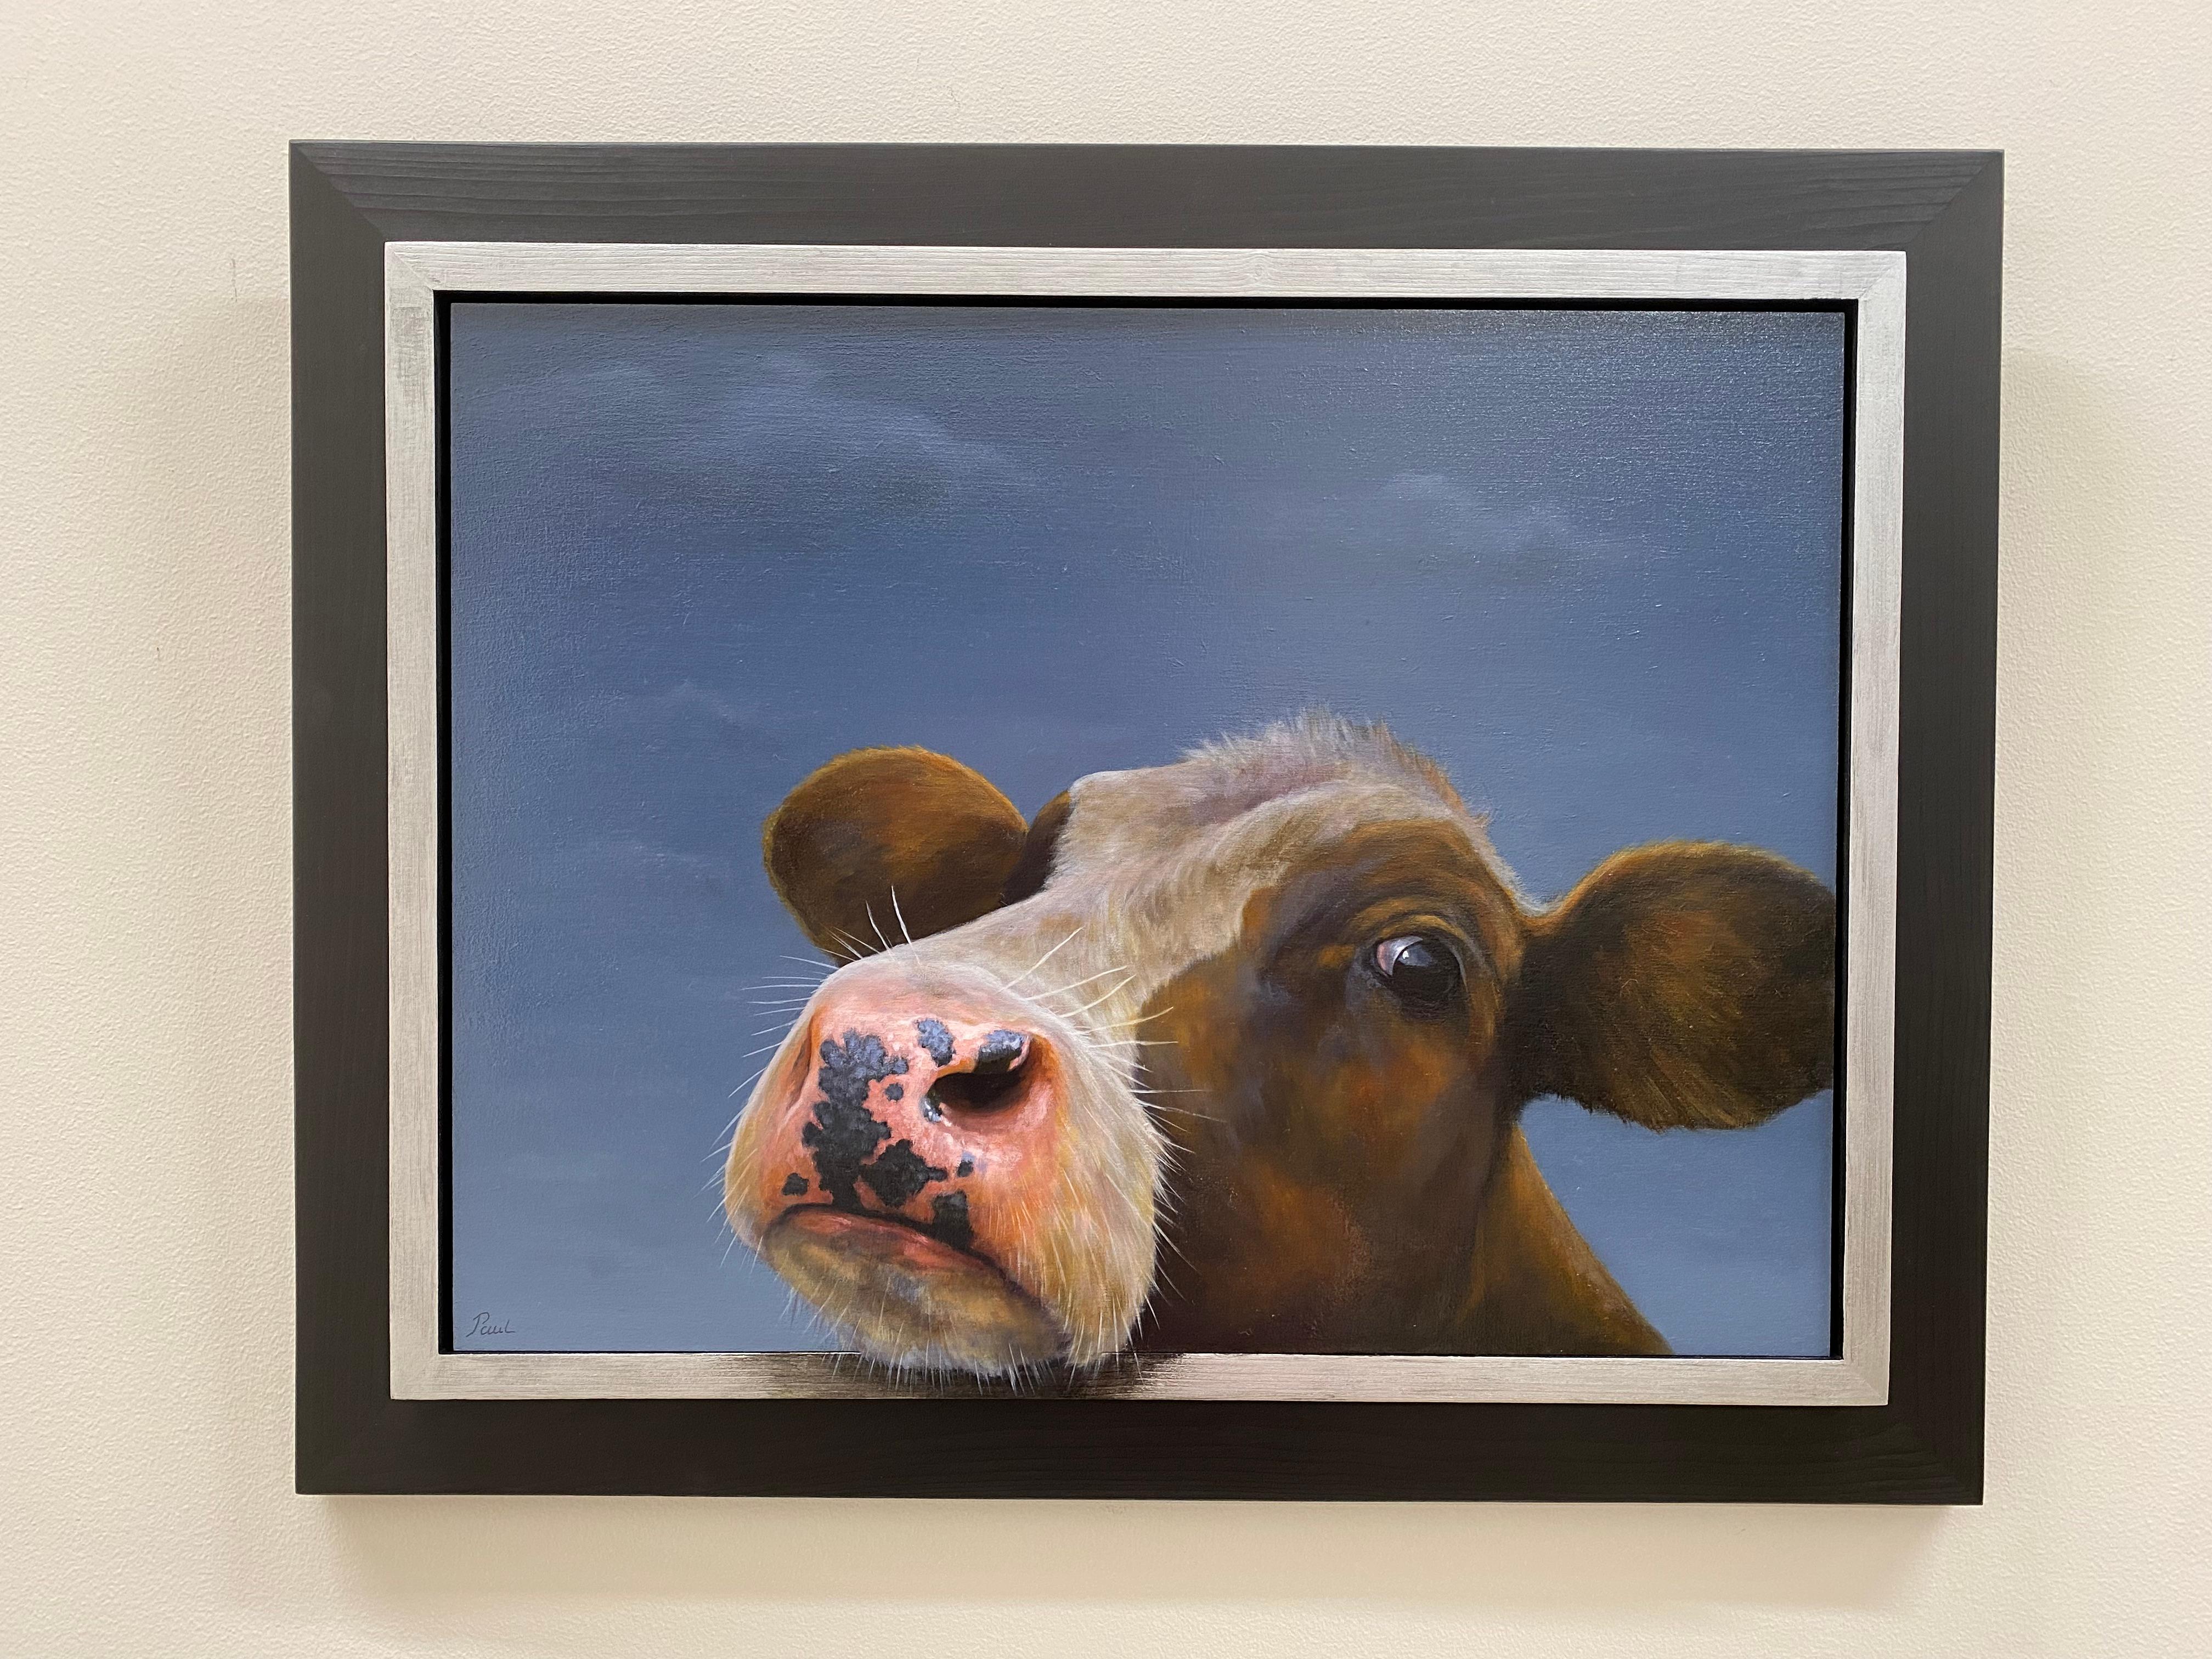 Curious – zeitgenössisches niederländisches Porträt einer Kuh, 21. Jahrhundert (Zeitgenössisch), Painting, von Paul Jansen